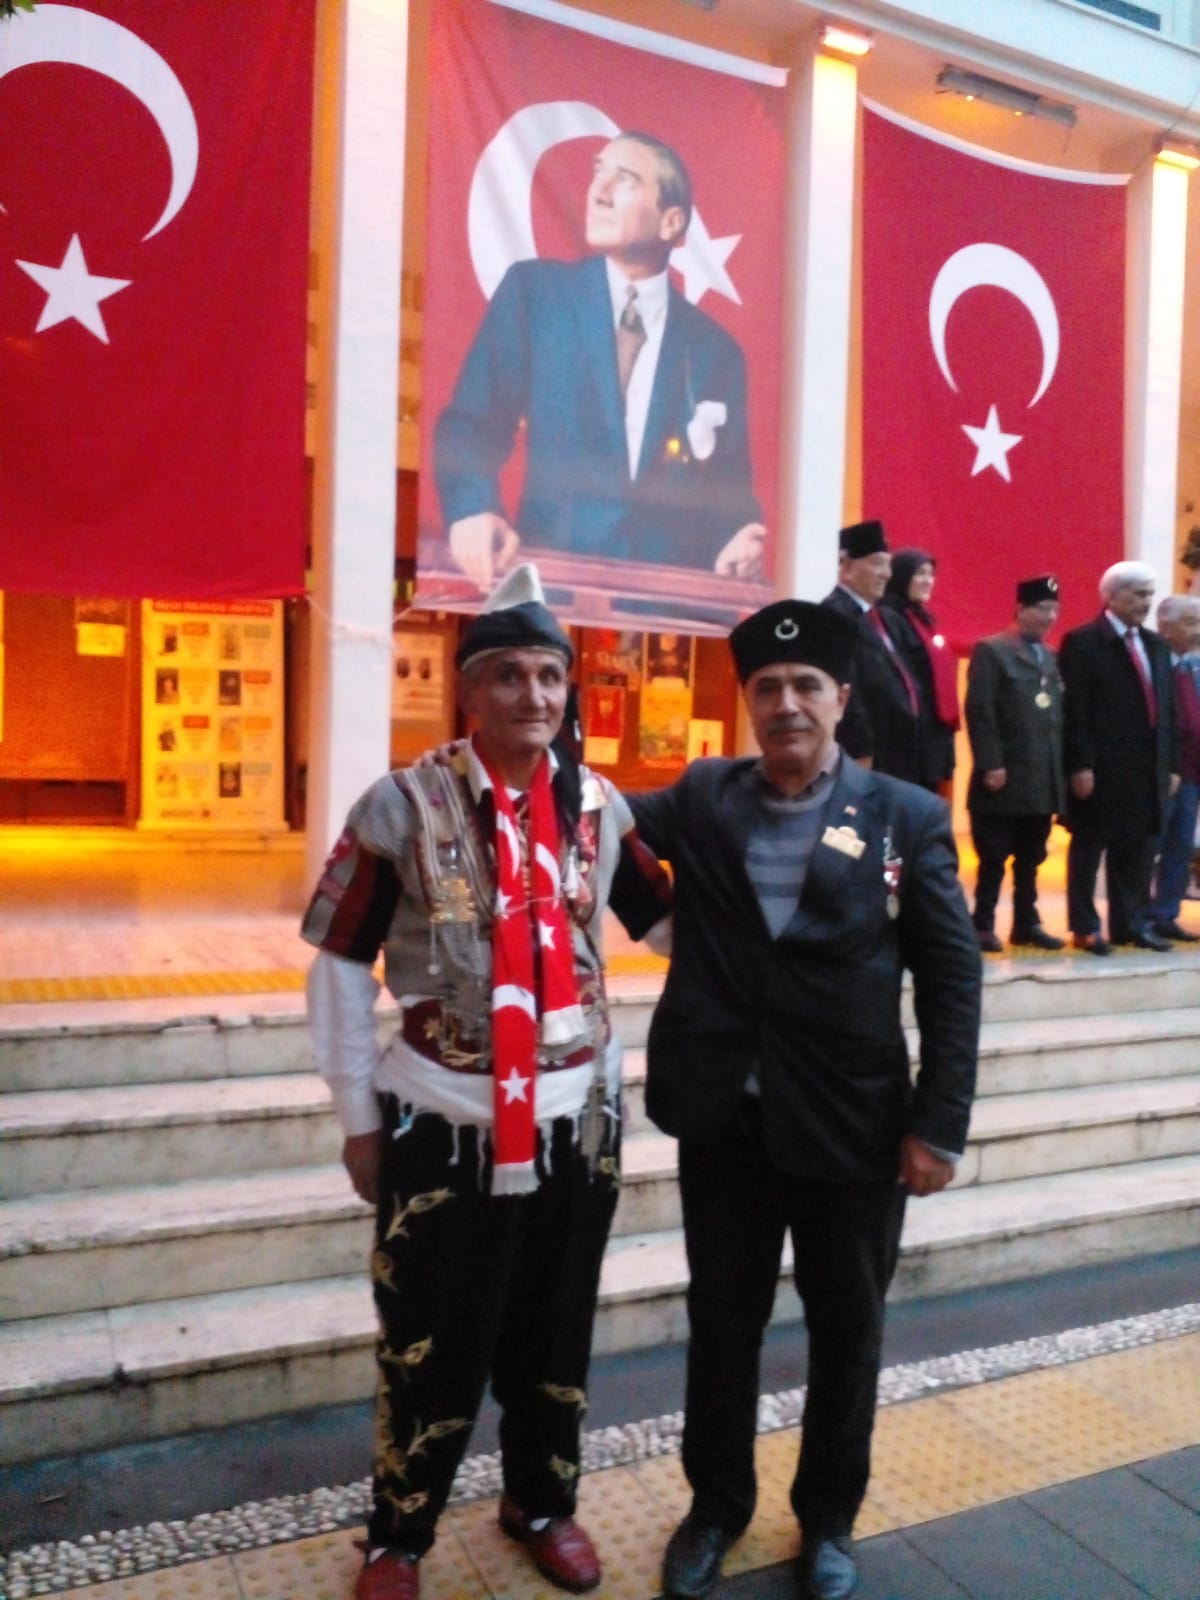 ADANA'da Büyük Buluşma; Türkiye Kuvayi Milliye Mücahitler Derneğinden101'yıl Etkinliği